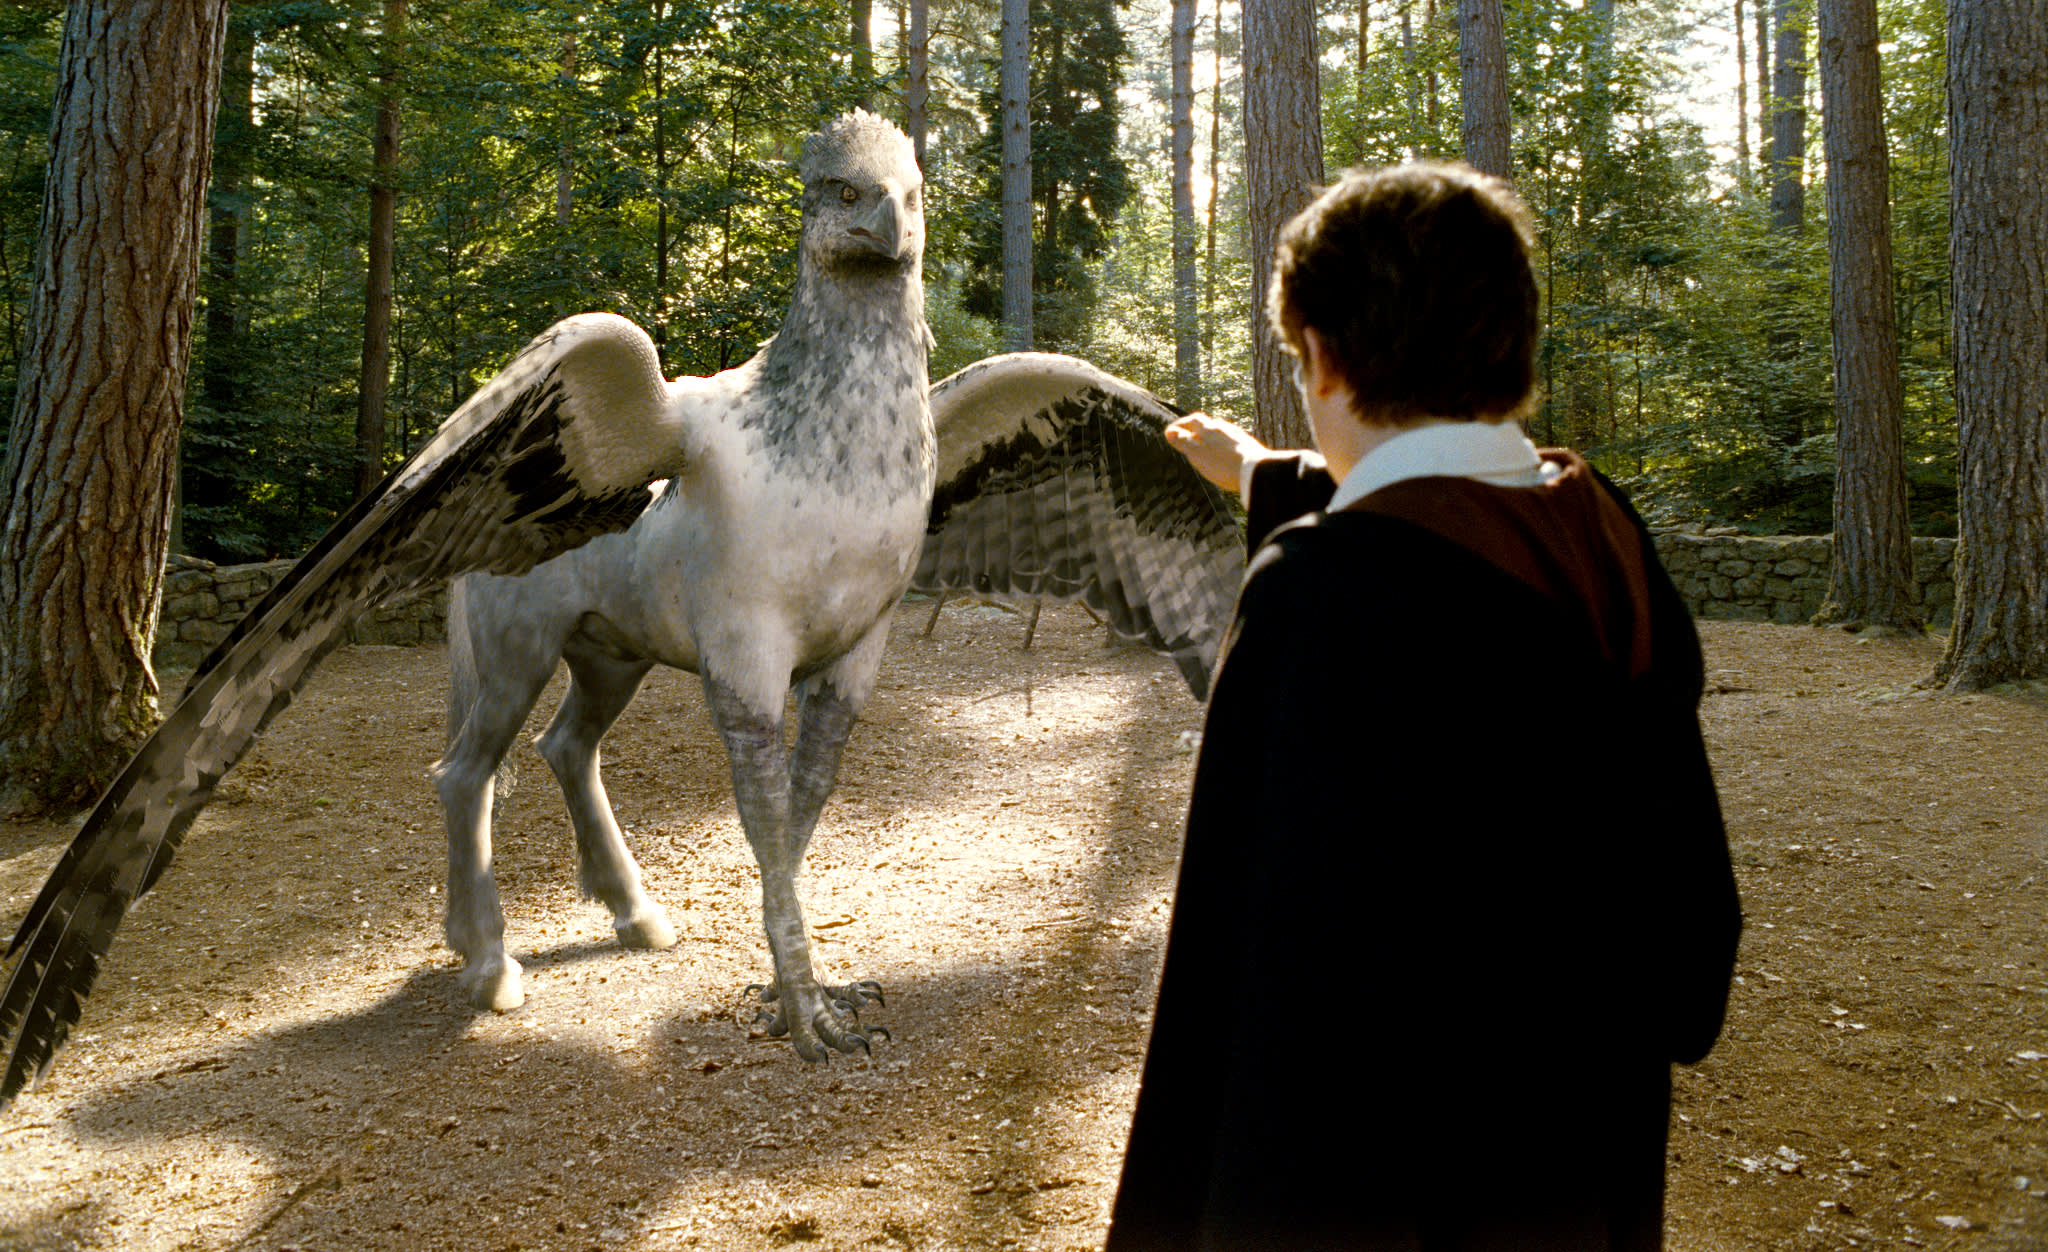 Buckbeak the Hippogriff in Harry Potter 